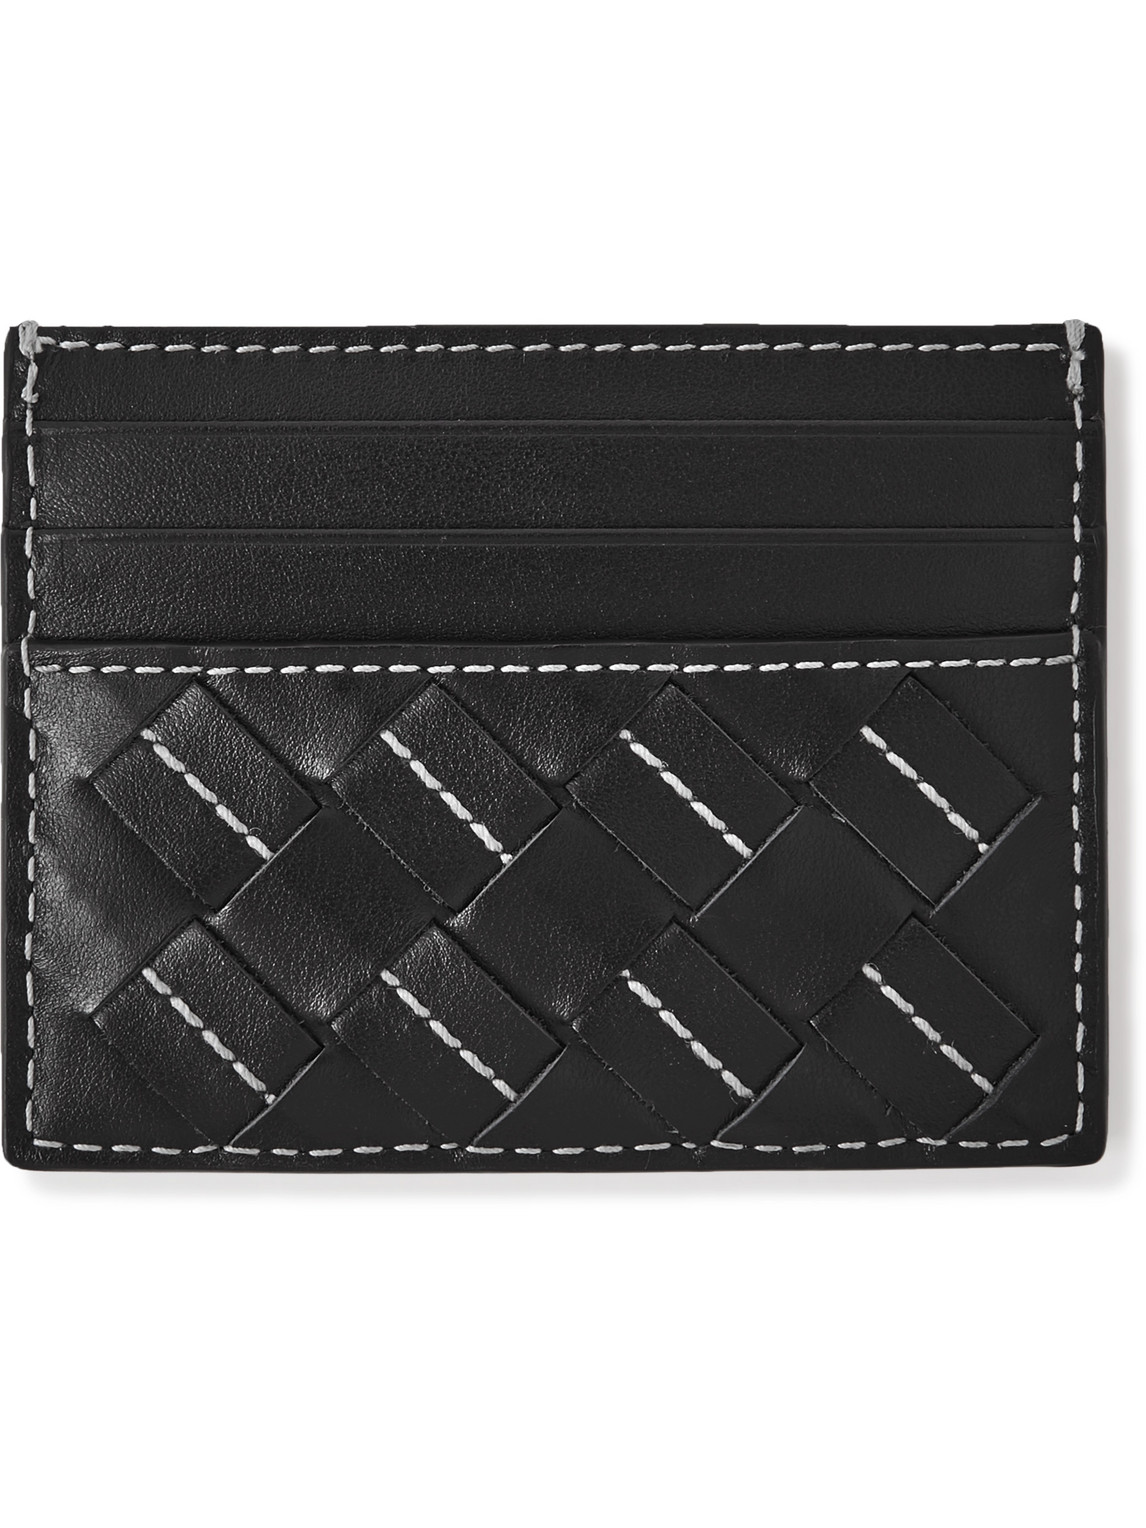 Bottega Veneta Intrecciato Leather Cardholder